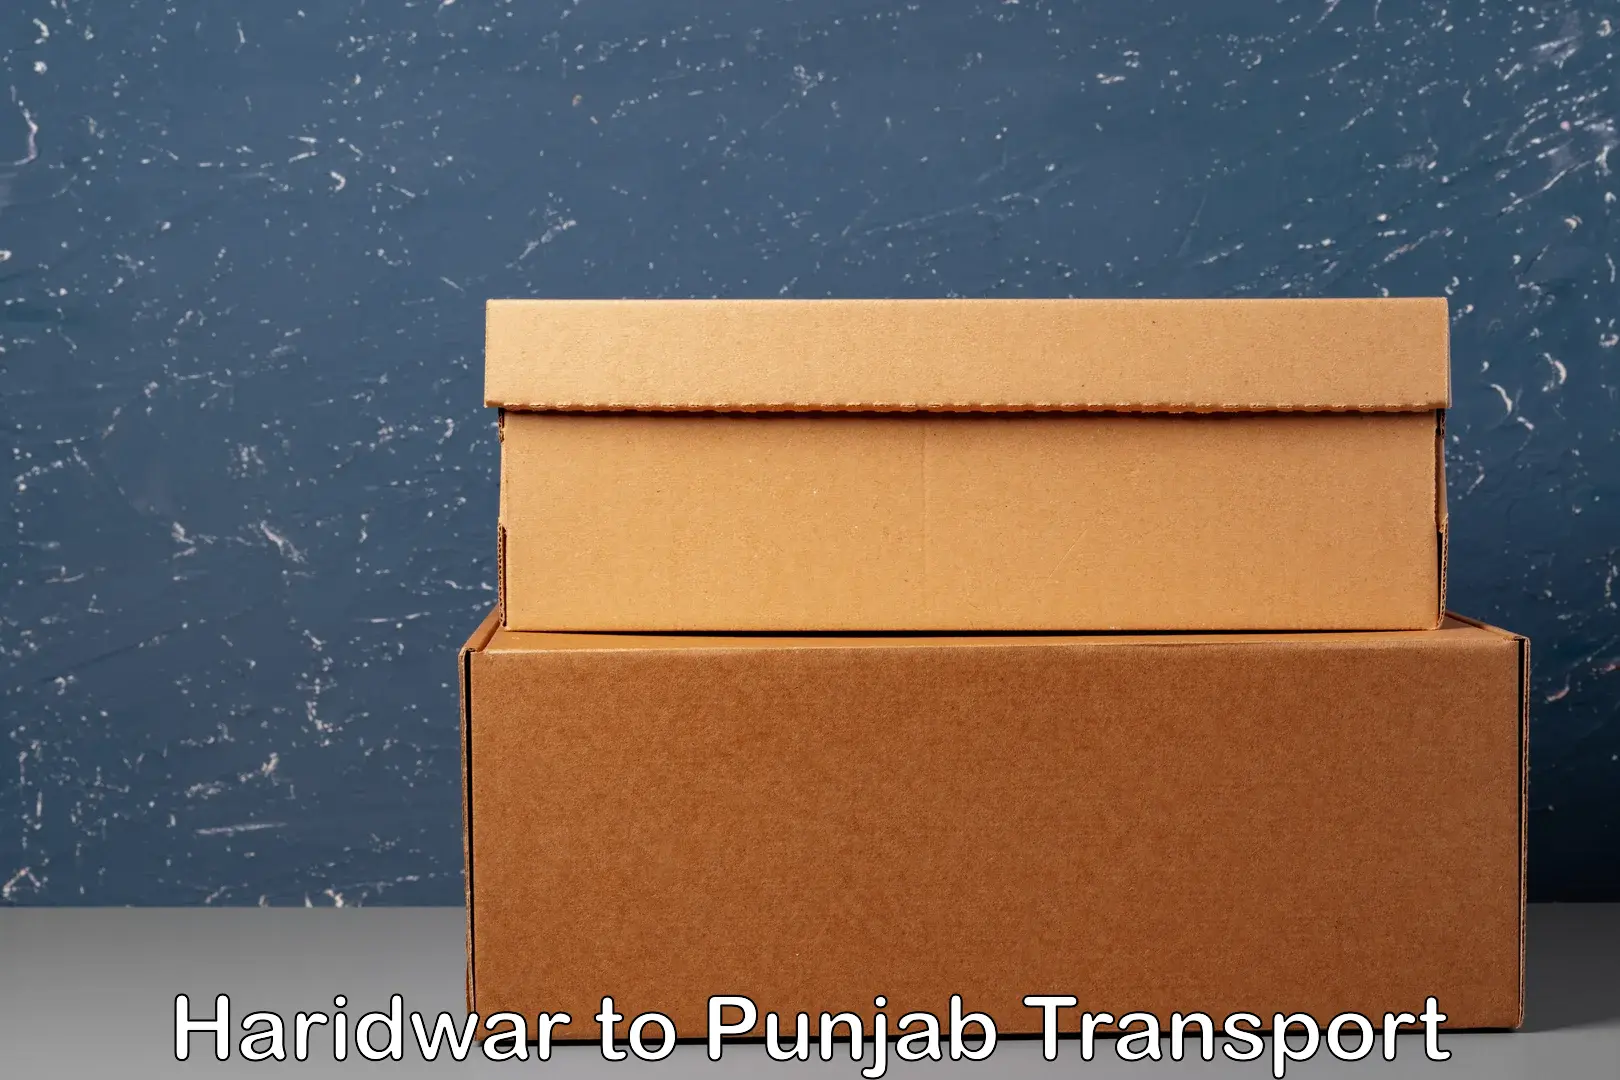 Shipping partner Haridwar to Punjab